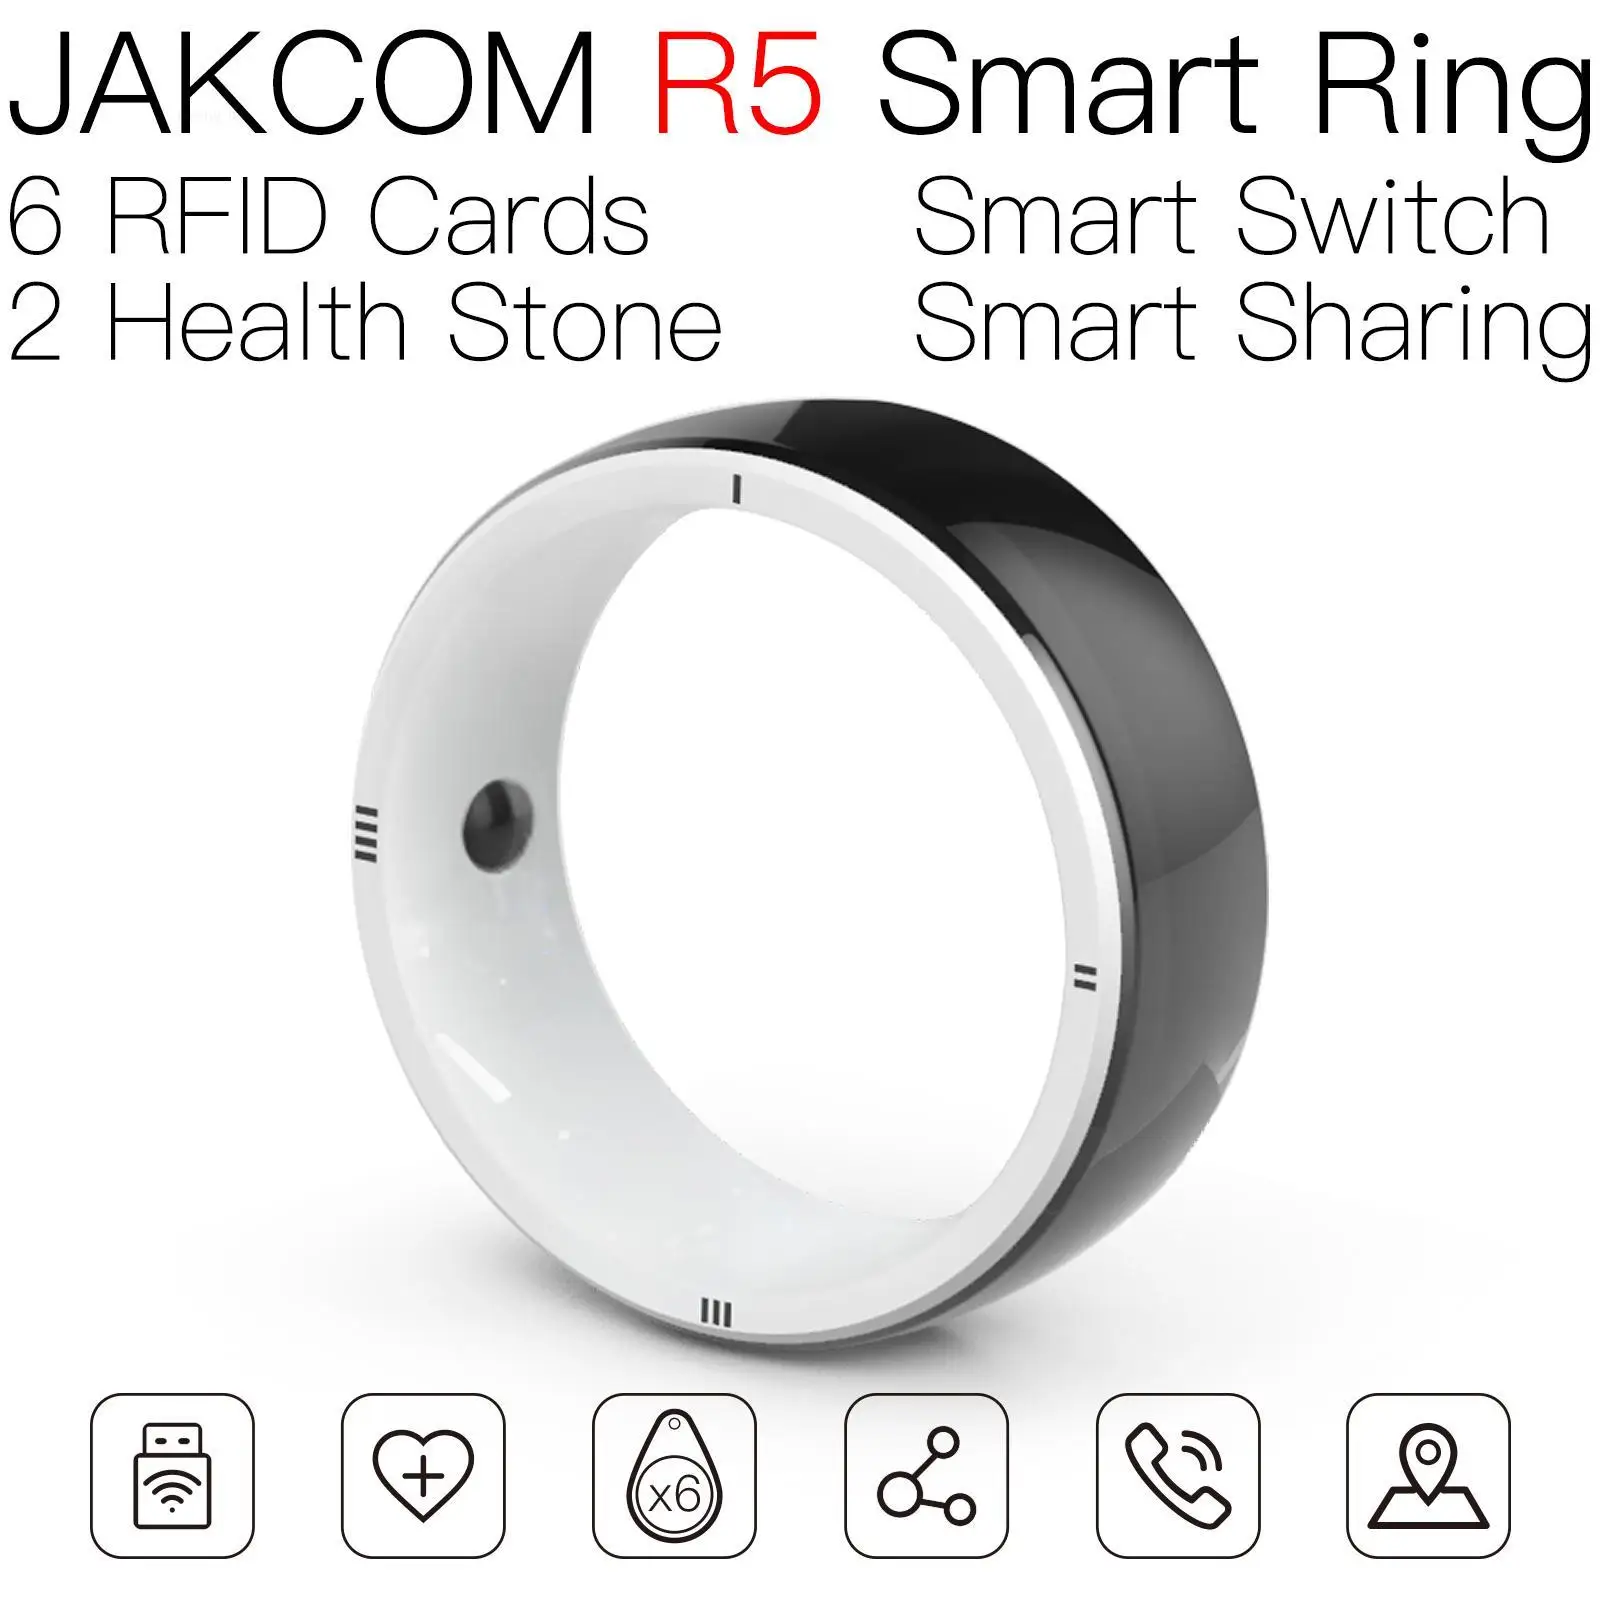 

Смарт-кольцо JAKCOM R5 для мужчин и женщин, rfid мультипла-метка, dogbone metal uid mct 125 кГц, перезапись hf, двухполюсная антенна electra